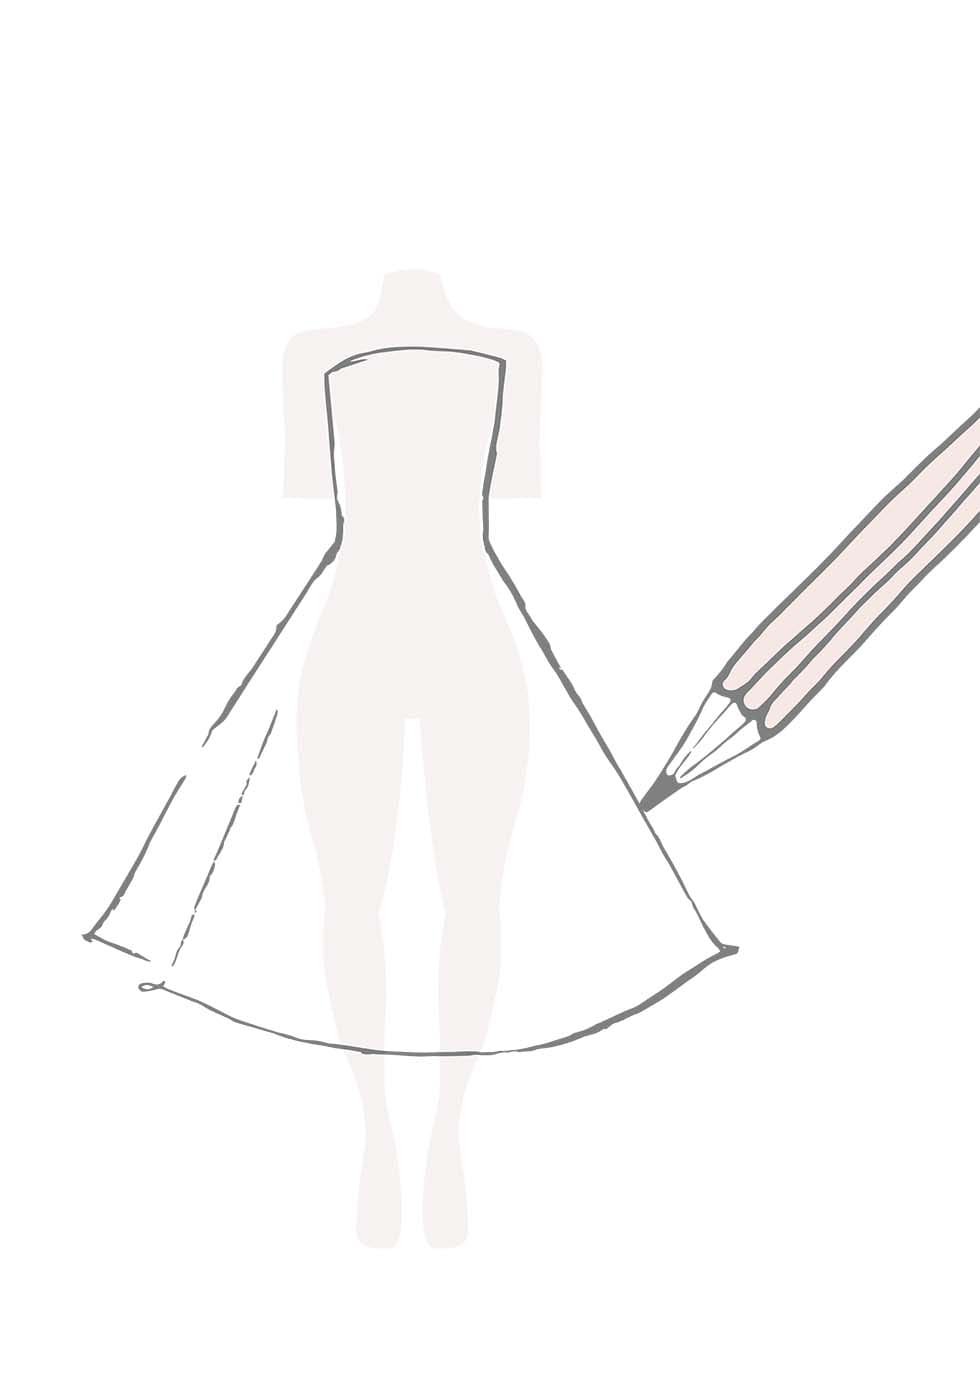 Mir welches test passt zu kleid Welches Brautkleid